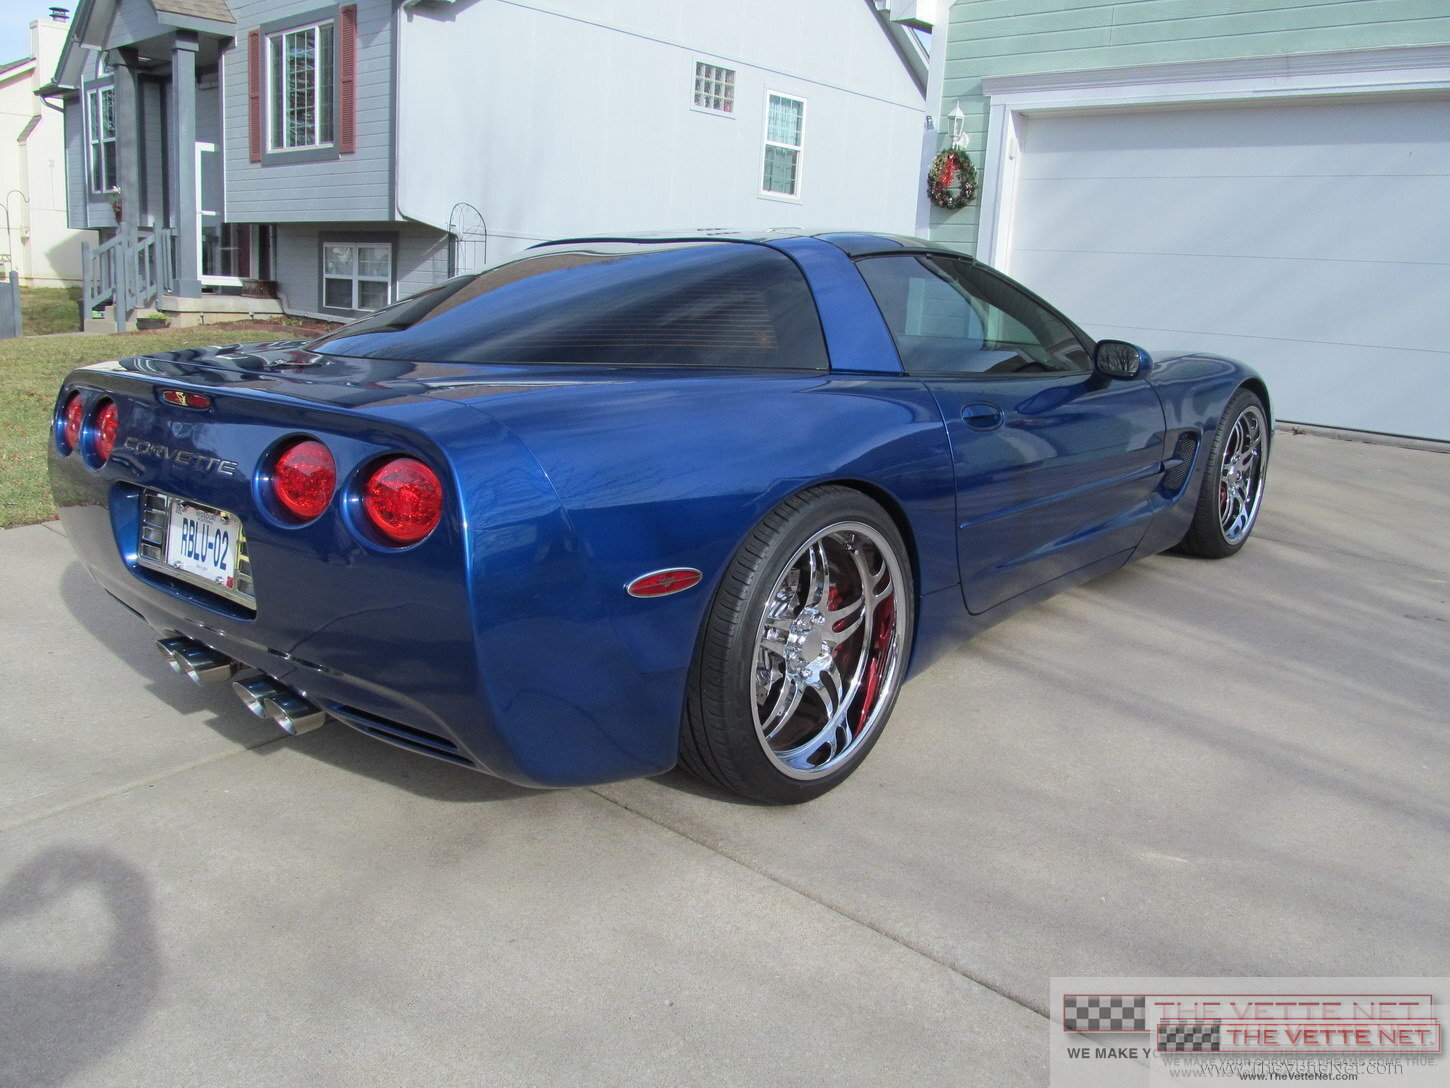 2002 Corvette Coupe Electron Blue